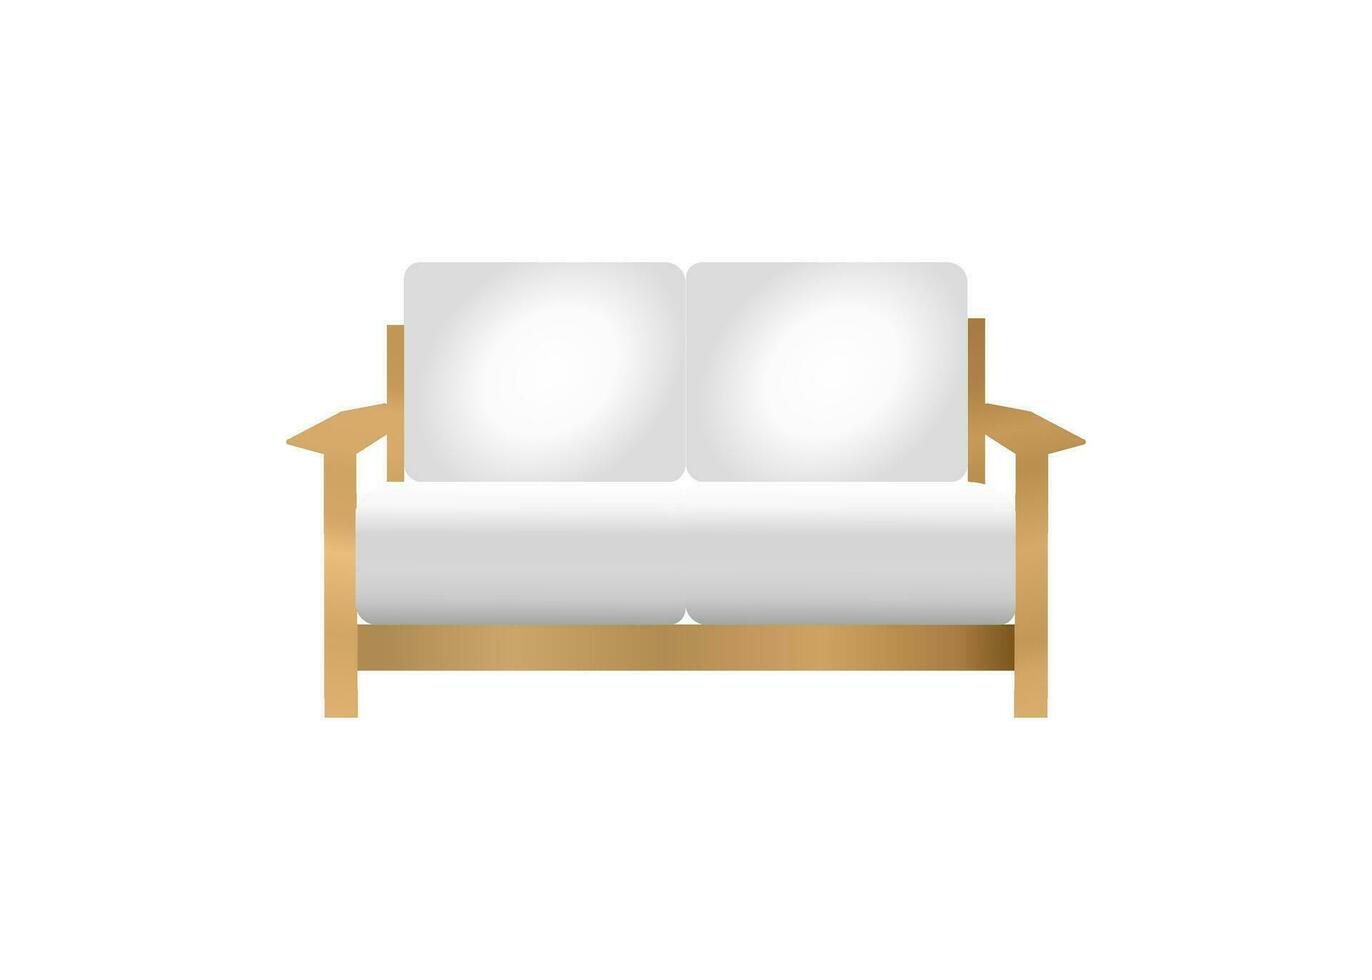 le illustration de en bois canapé chaise et blanc oreiller muji style Japonais style pour intérieur conception concept vecteur